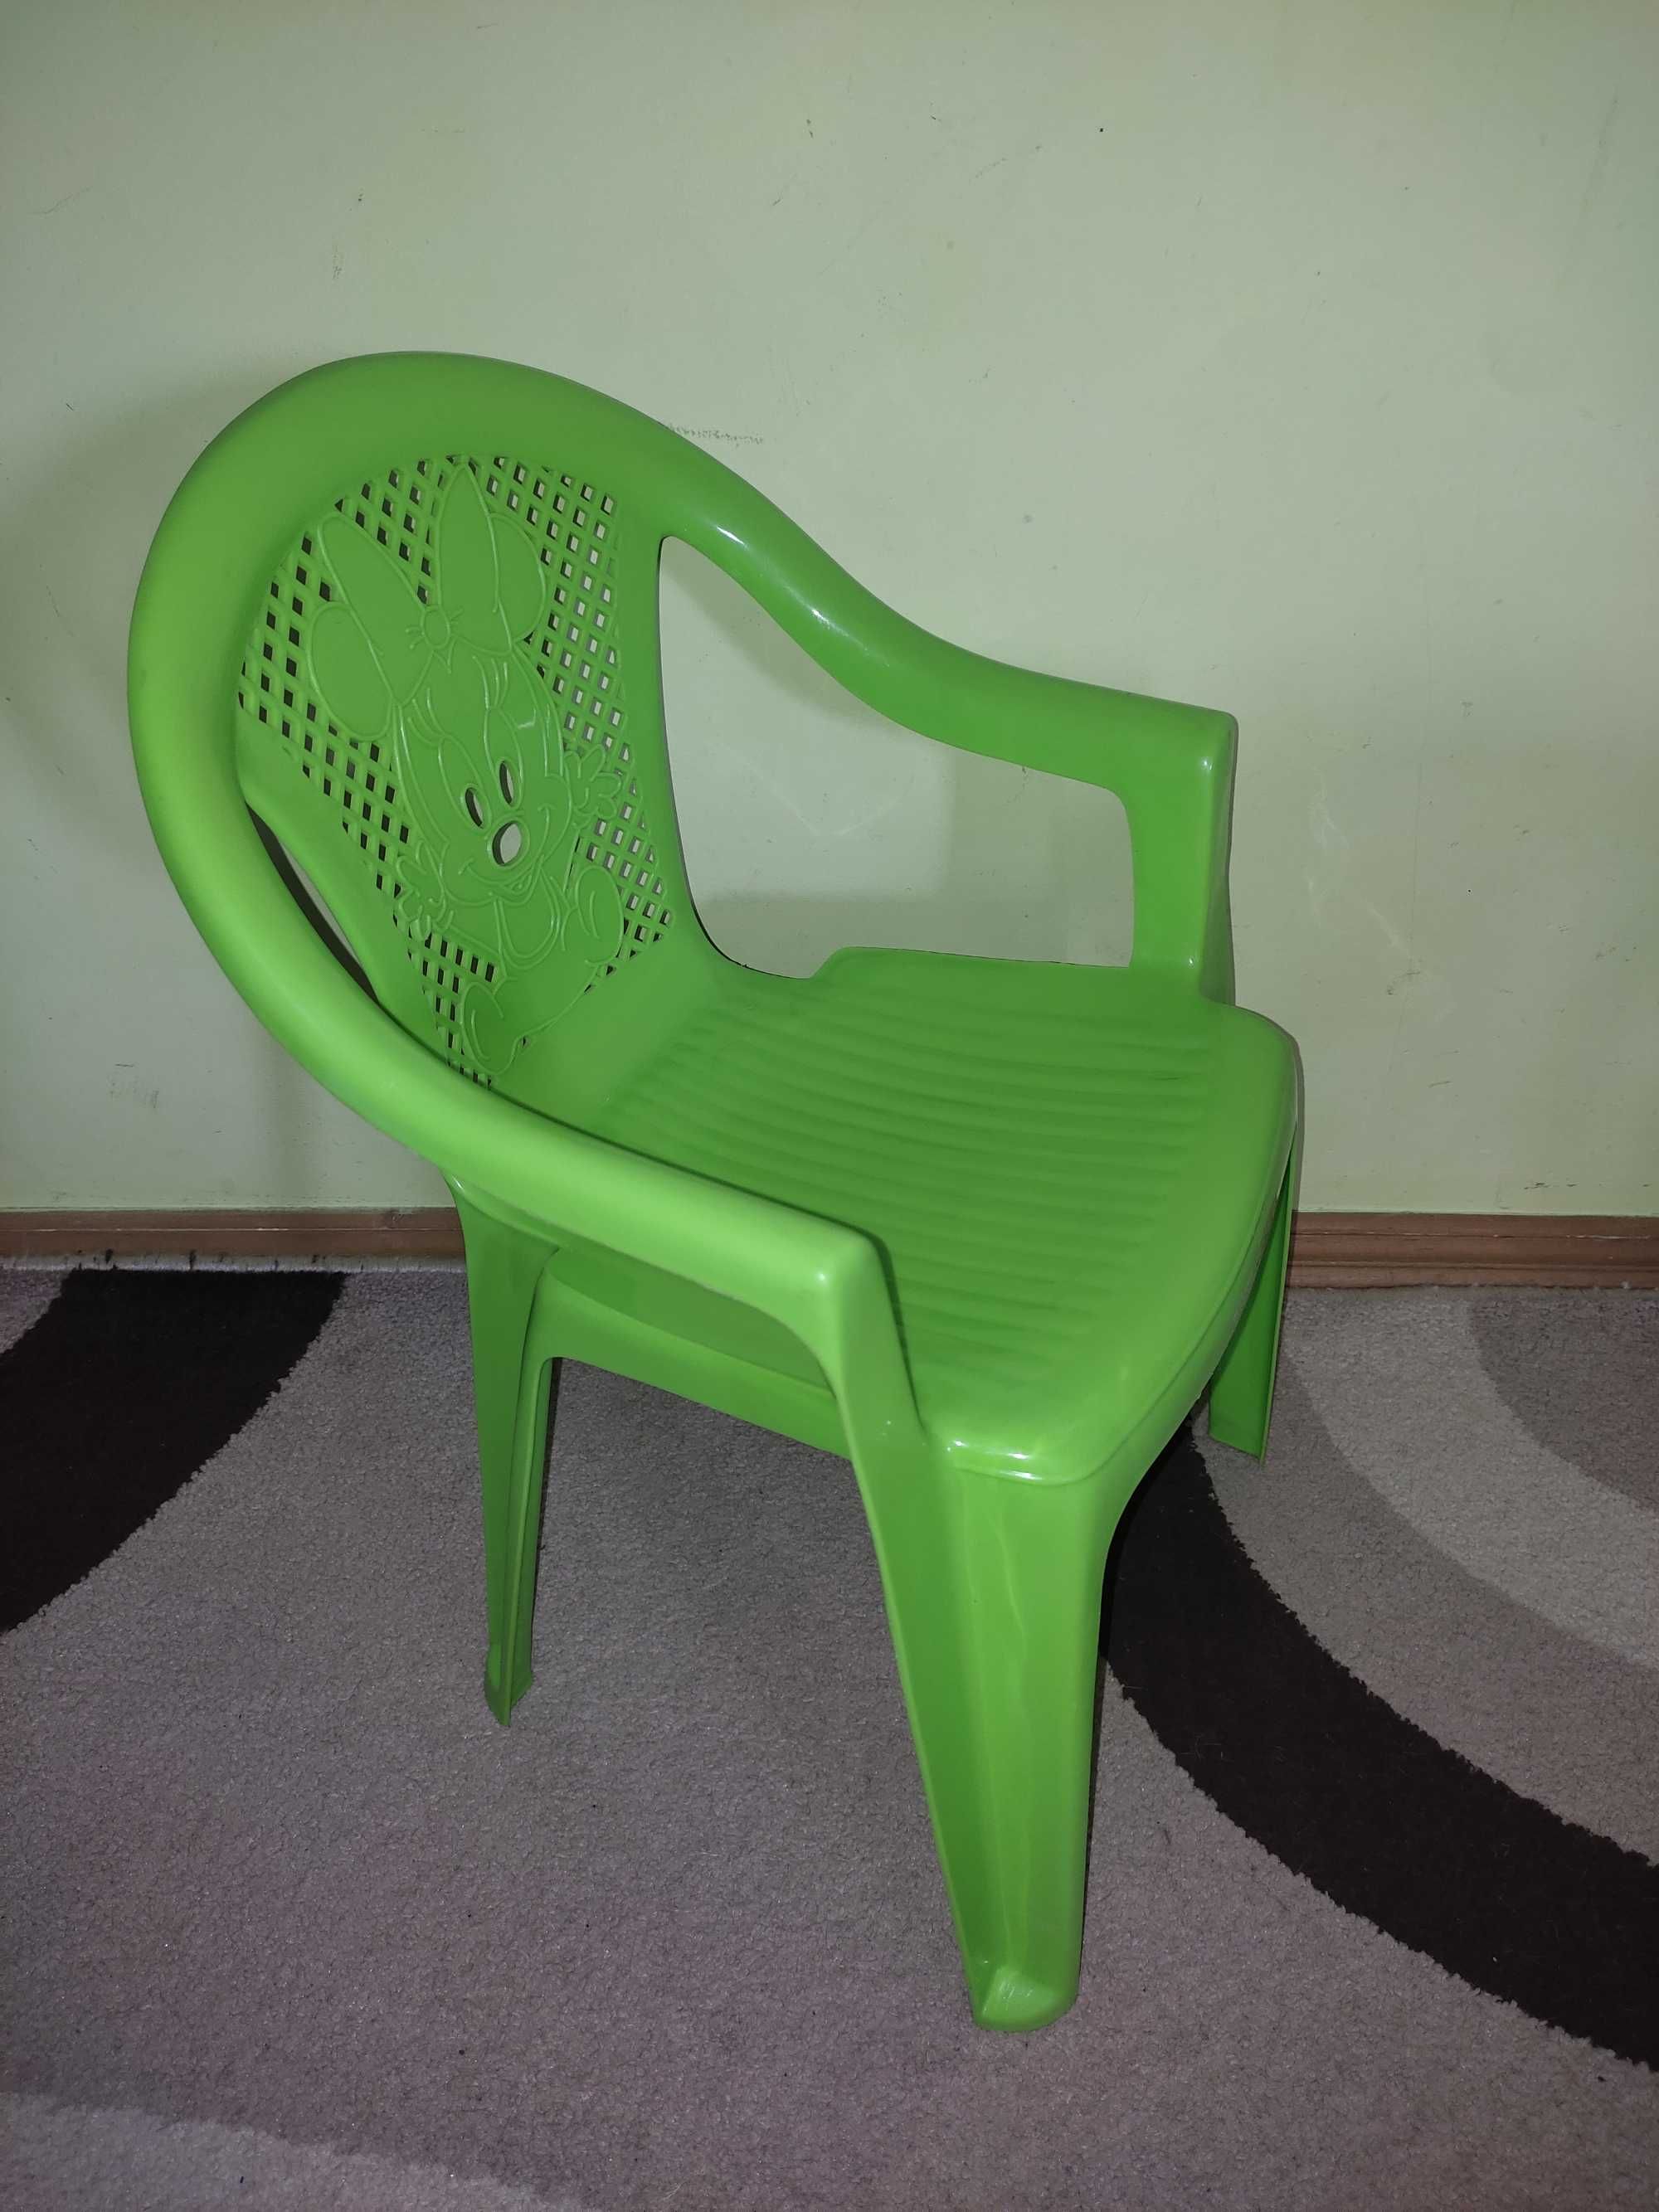 Пластикове дитяче крісло.